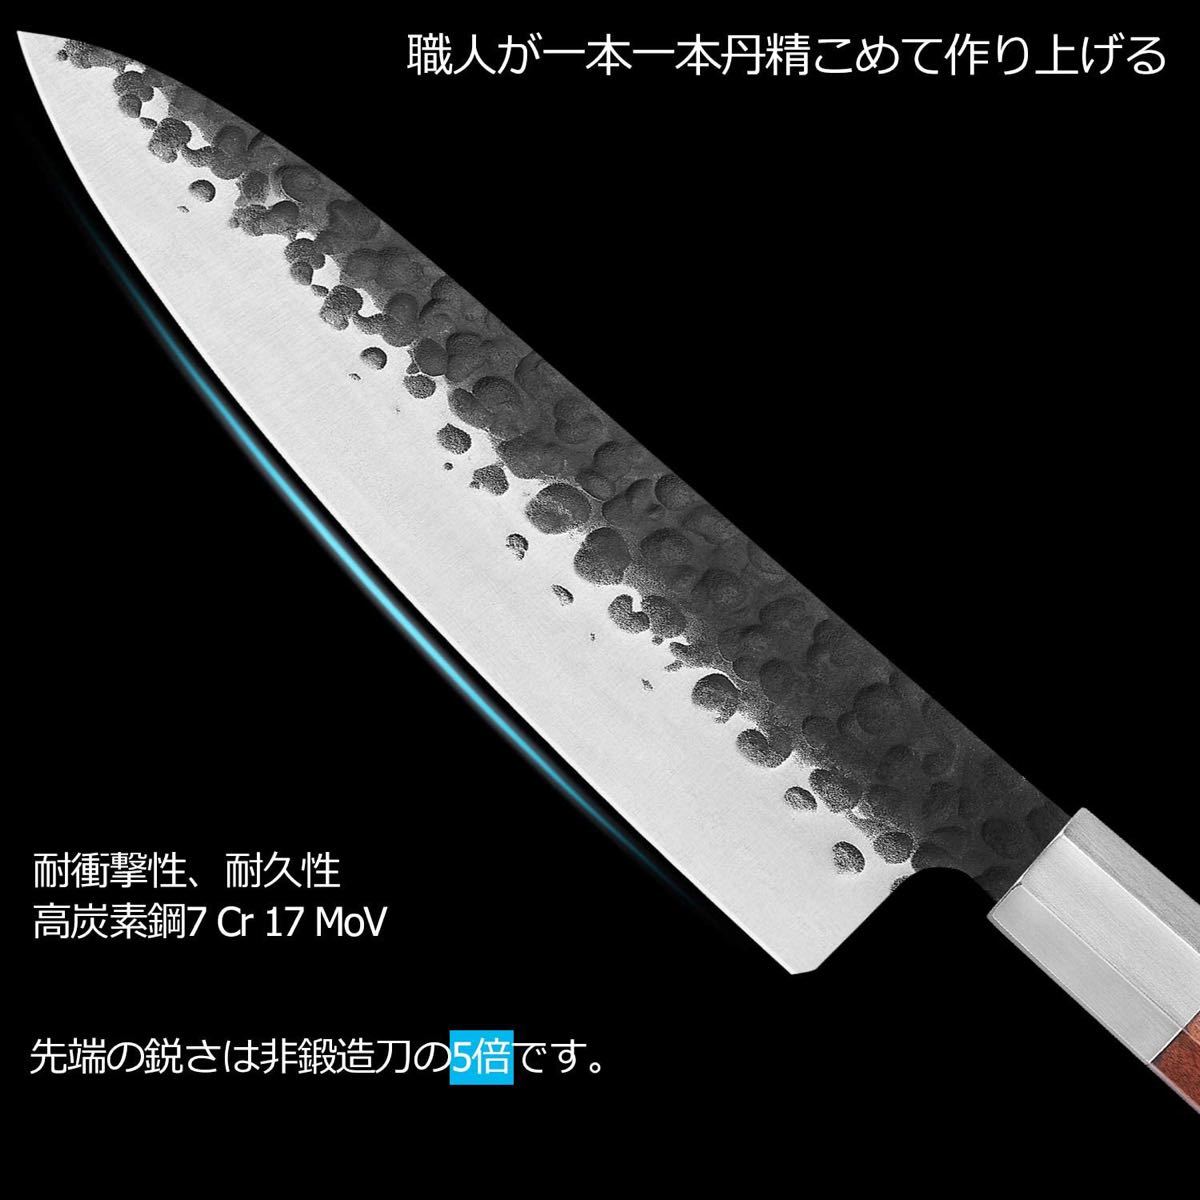 特価★ シェフナイフ 203mm 牛刀包丁 ステンレス 鋼 鍛造包丁 高級